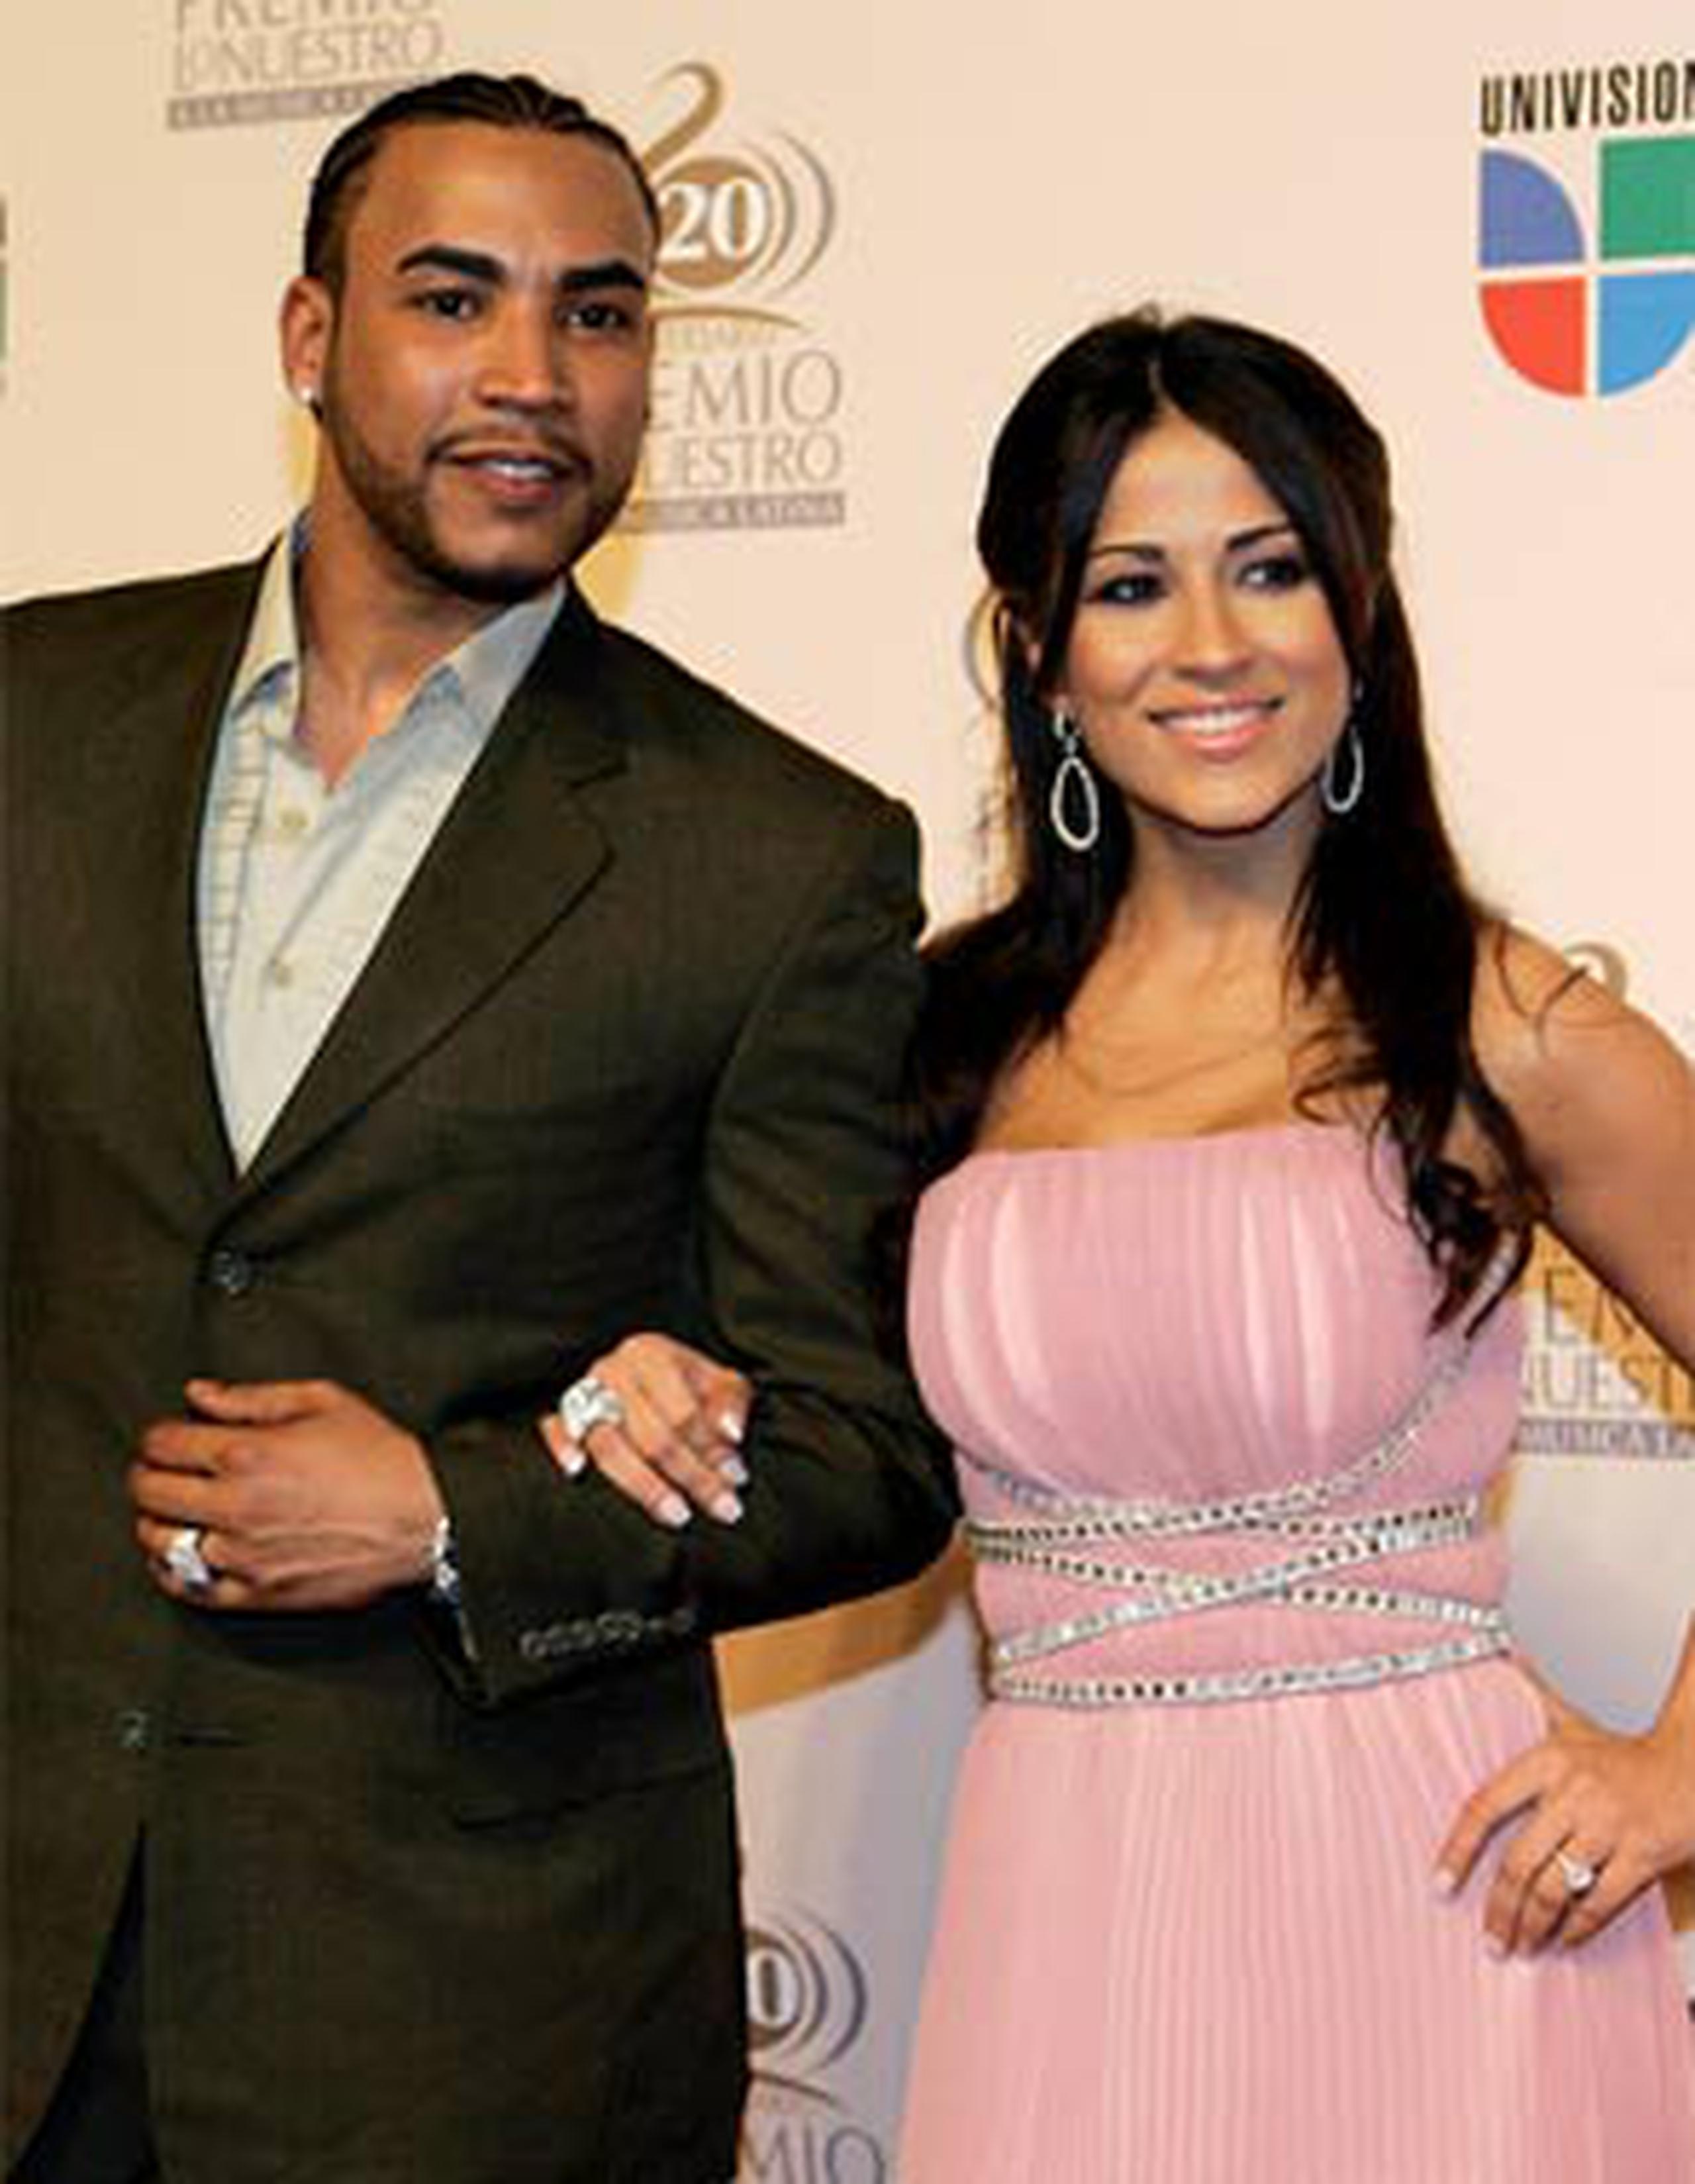 La pareja contrajo nupcias el 19 de abril de 2010 en una fastuosa ceremonia efectuada en un hotel de San Juan.  (Archivo)